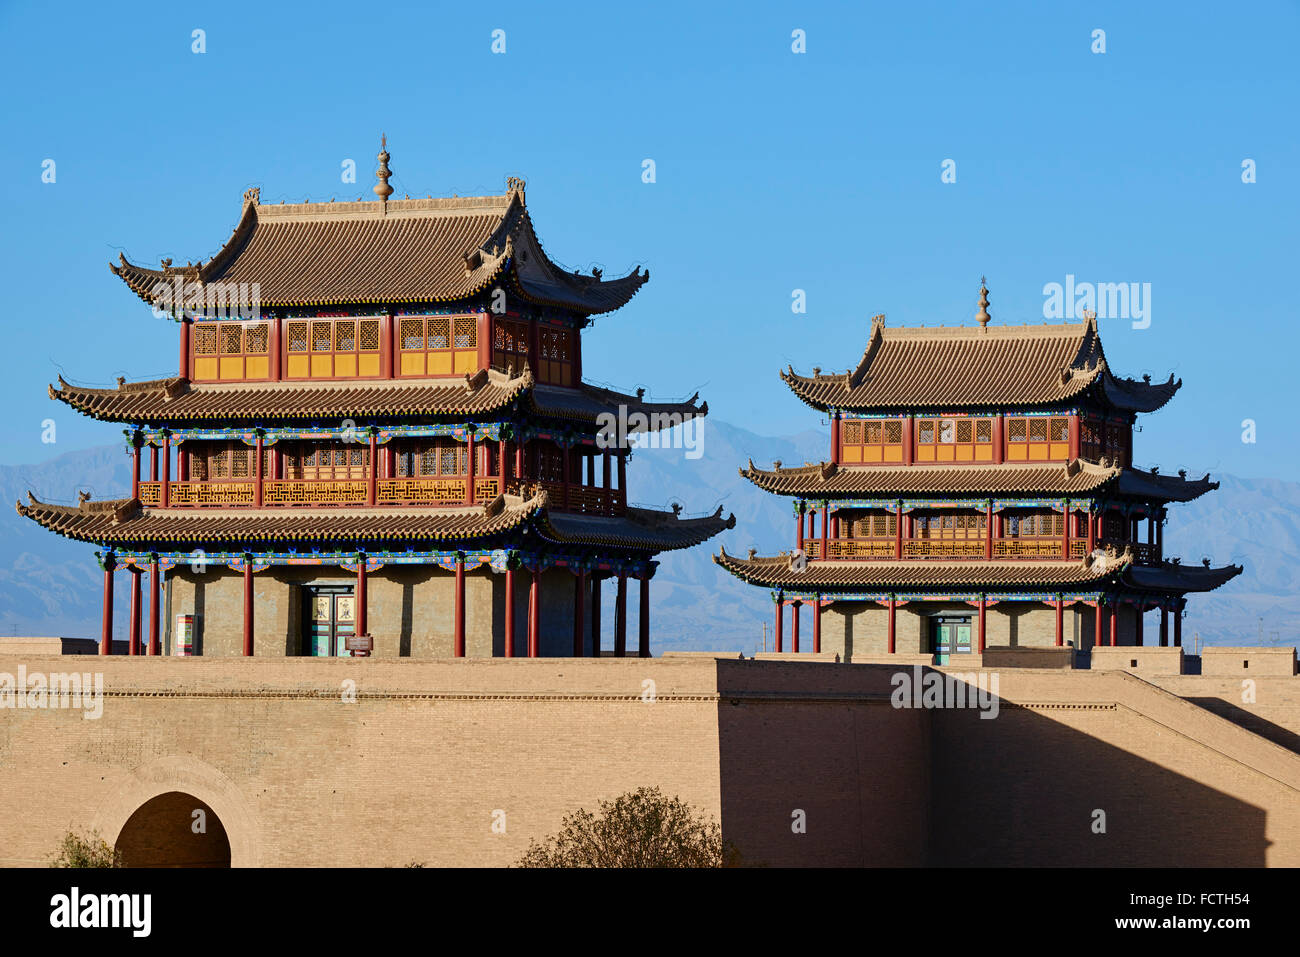 La Chine, la province de Gansu, Jiayuguan, la forteresse à l'extrémité ouest de la Grande Muraille, Unesco world heritage Banque D'Images